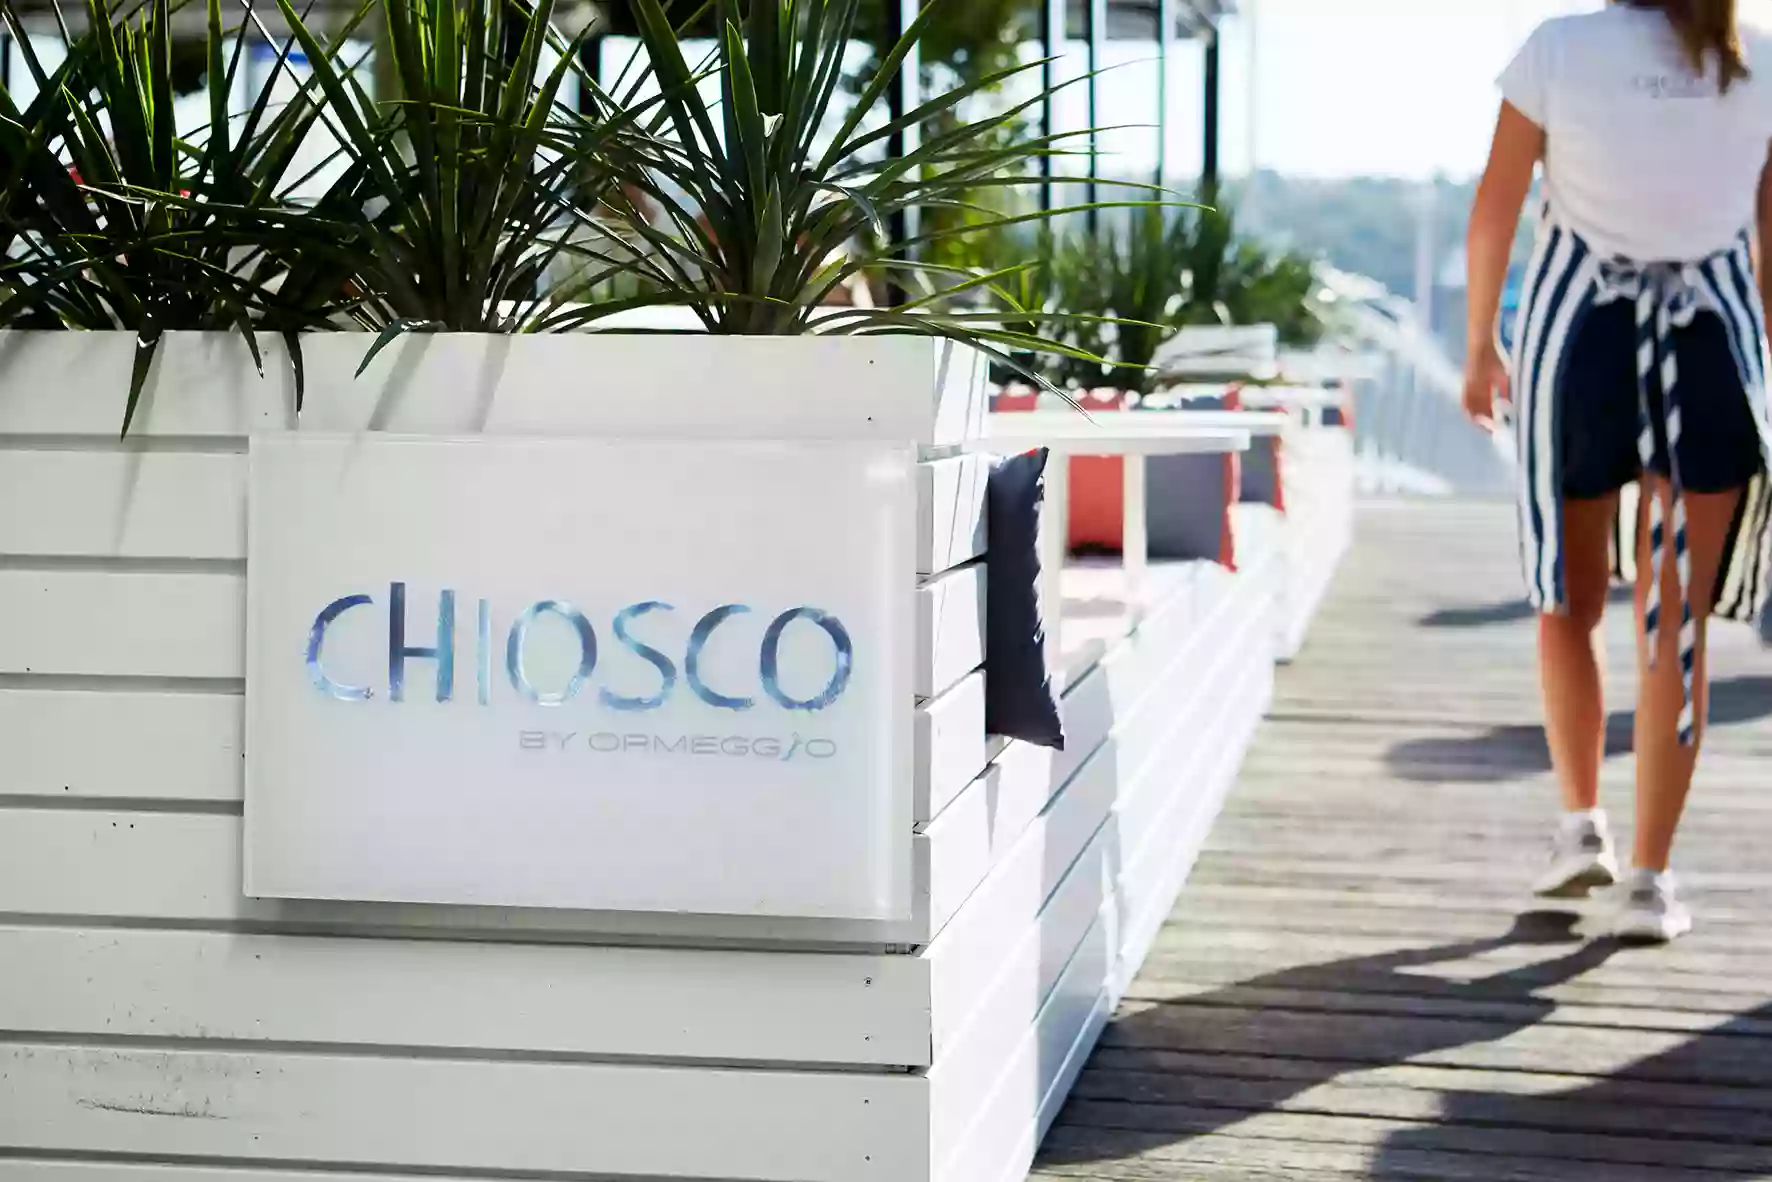 Chiosco by Ormeggio